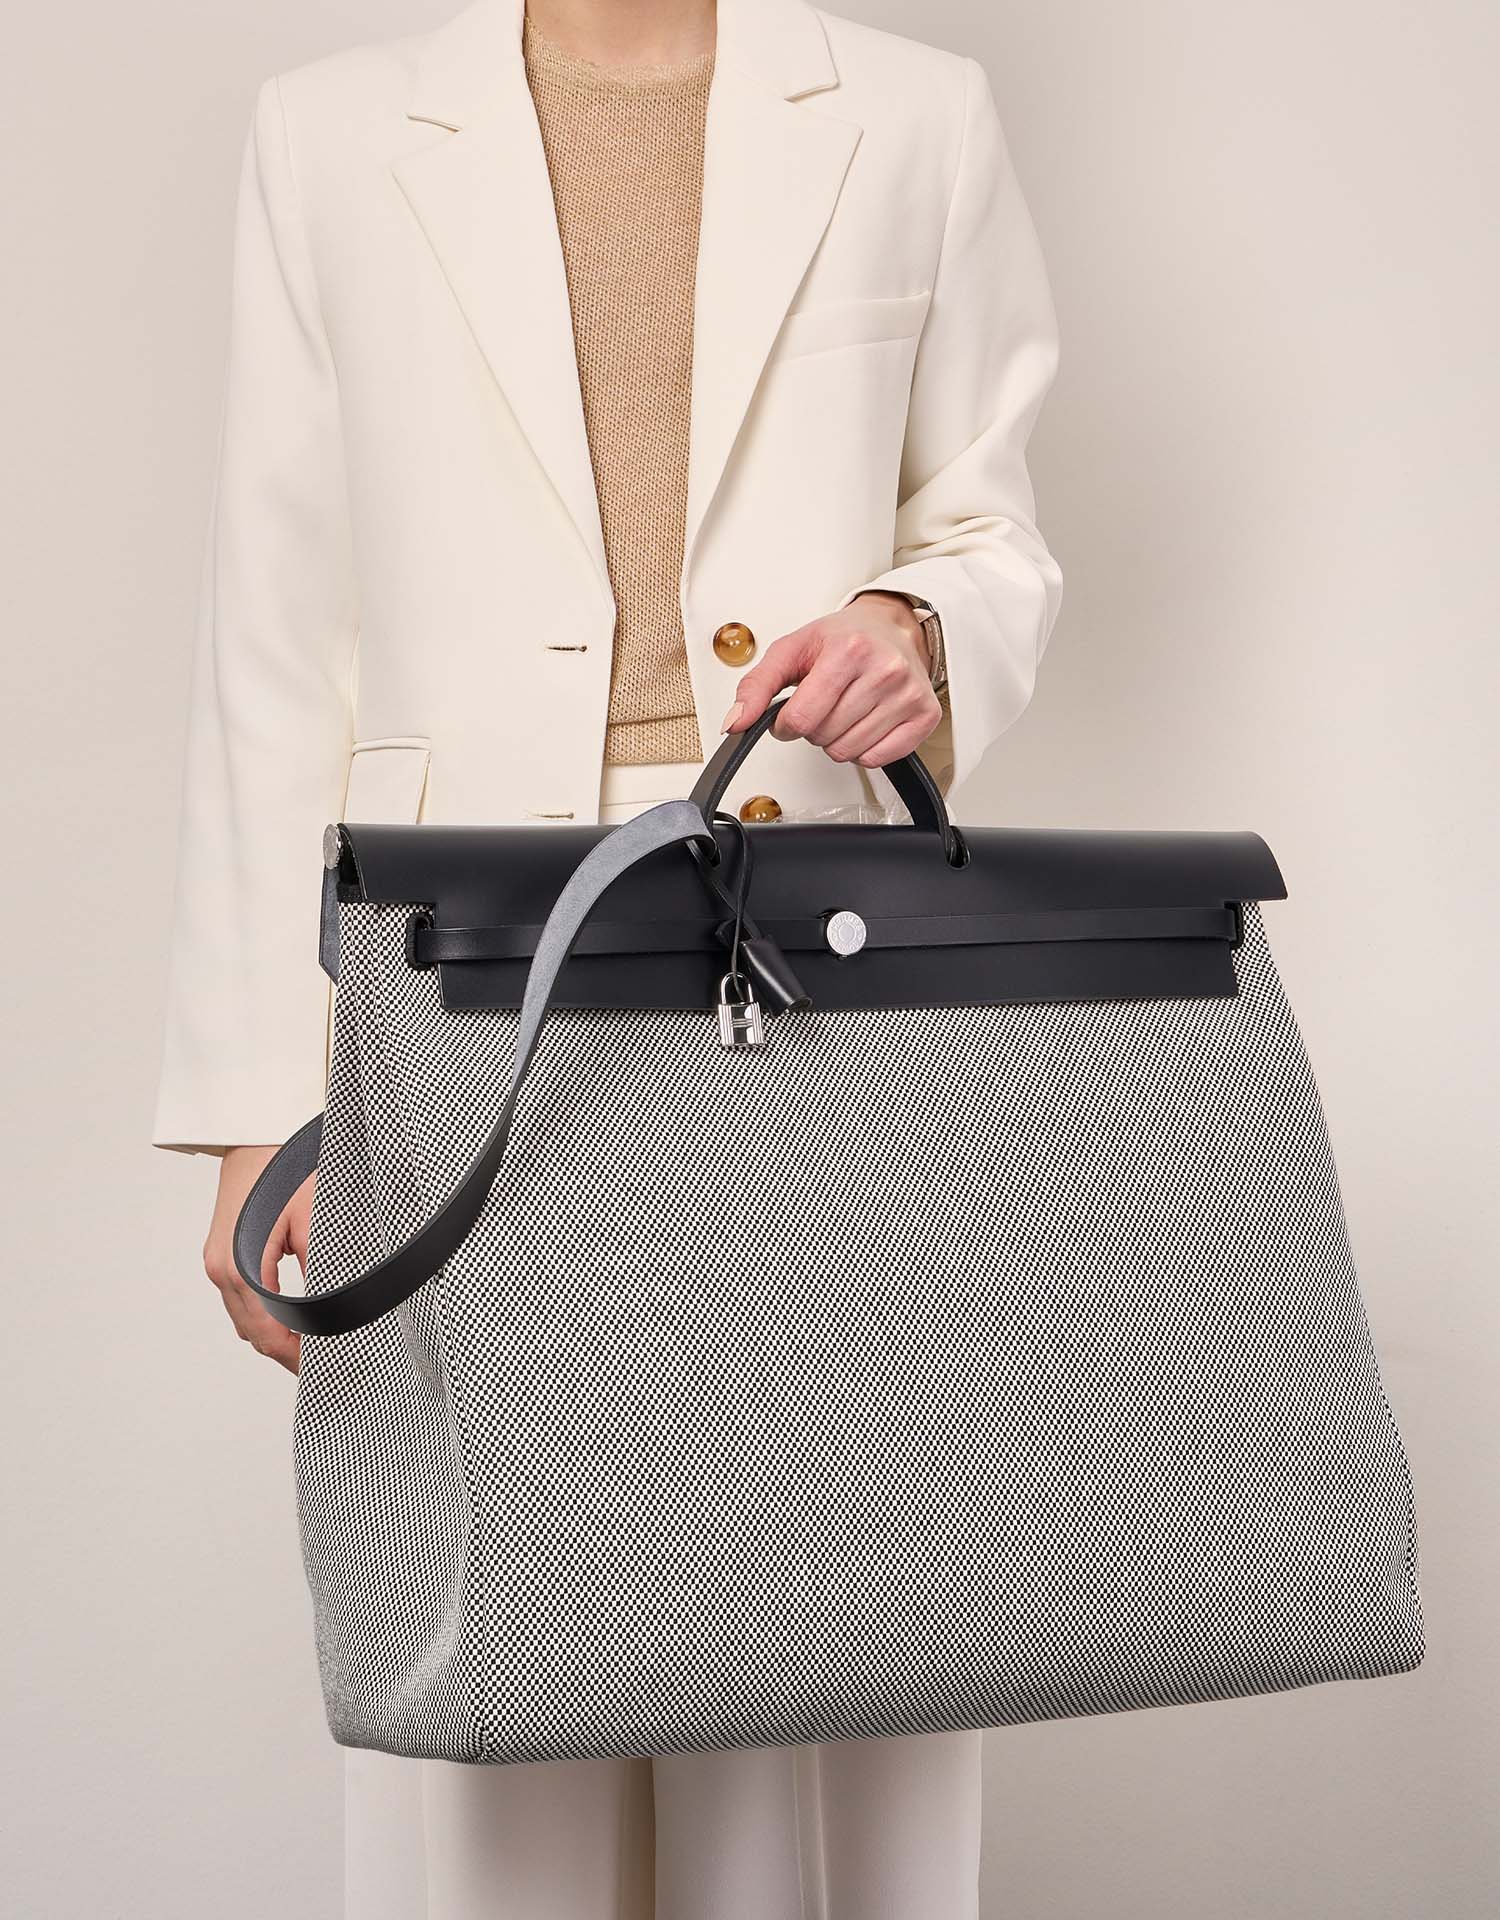 Hermès Herbag 52 Schwarz-Ecru Größen Getragen | Verkaufen Sie Ihre Designer-Tasche auf Saclab.com